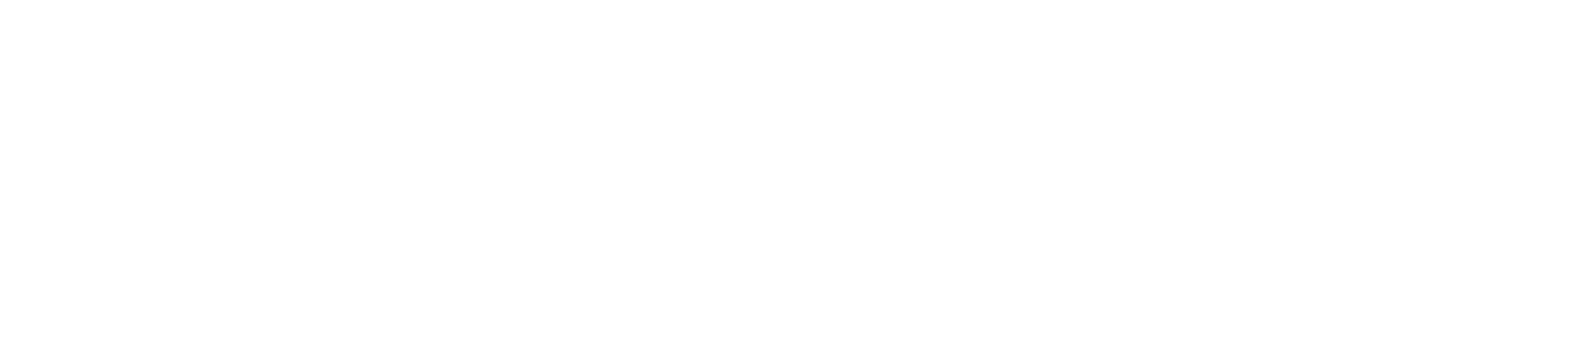 Compugen logo large for dark backgrounds (transparent PNG)